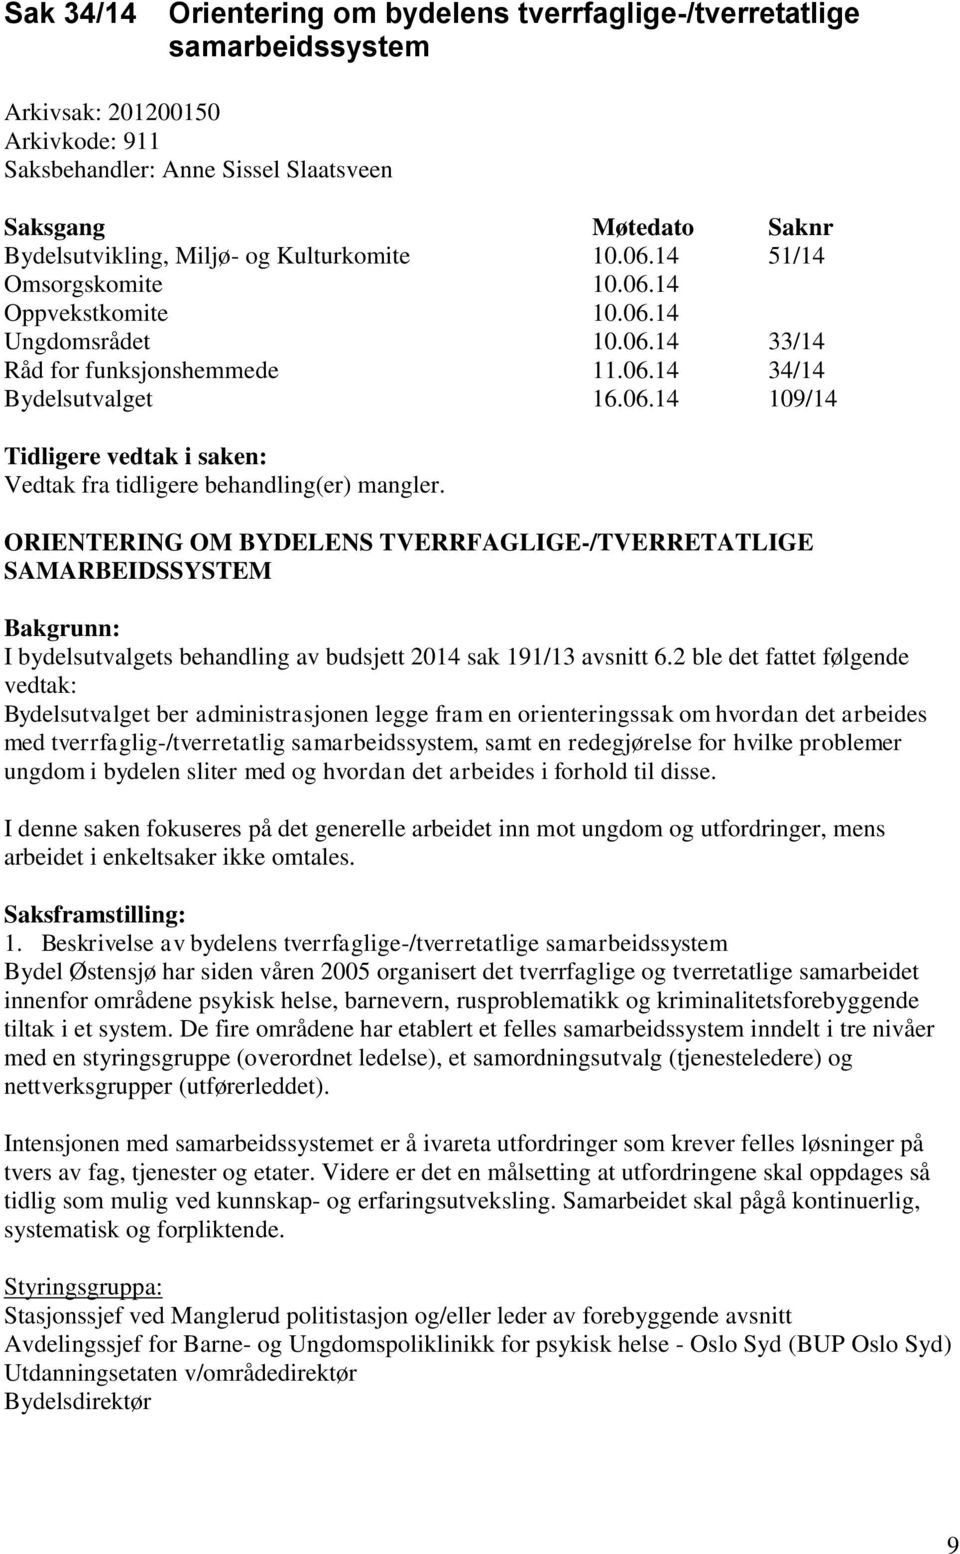 ORIENTERING OM BYDELENS TVERRFAGLIGE-/TVERRETATLIGE SAMARBEIDSSYSTEM Bakgrunn: I bydelsutvalgets behandling av budsjett 2014 sak 191/13 avsnitt 6.